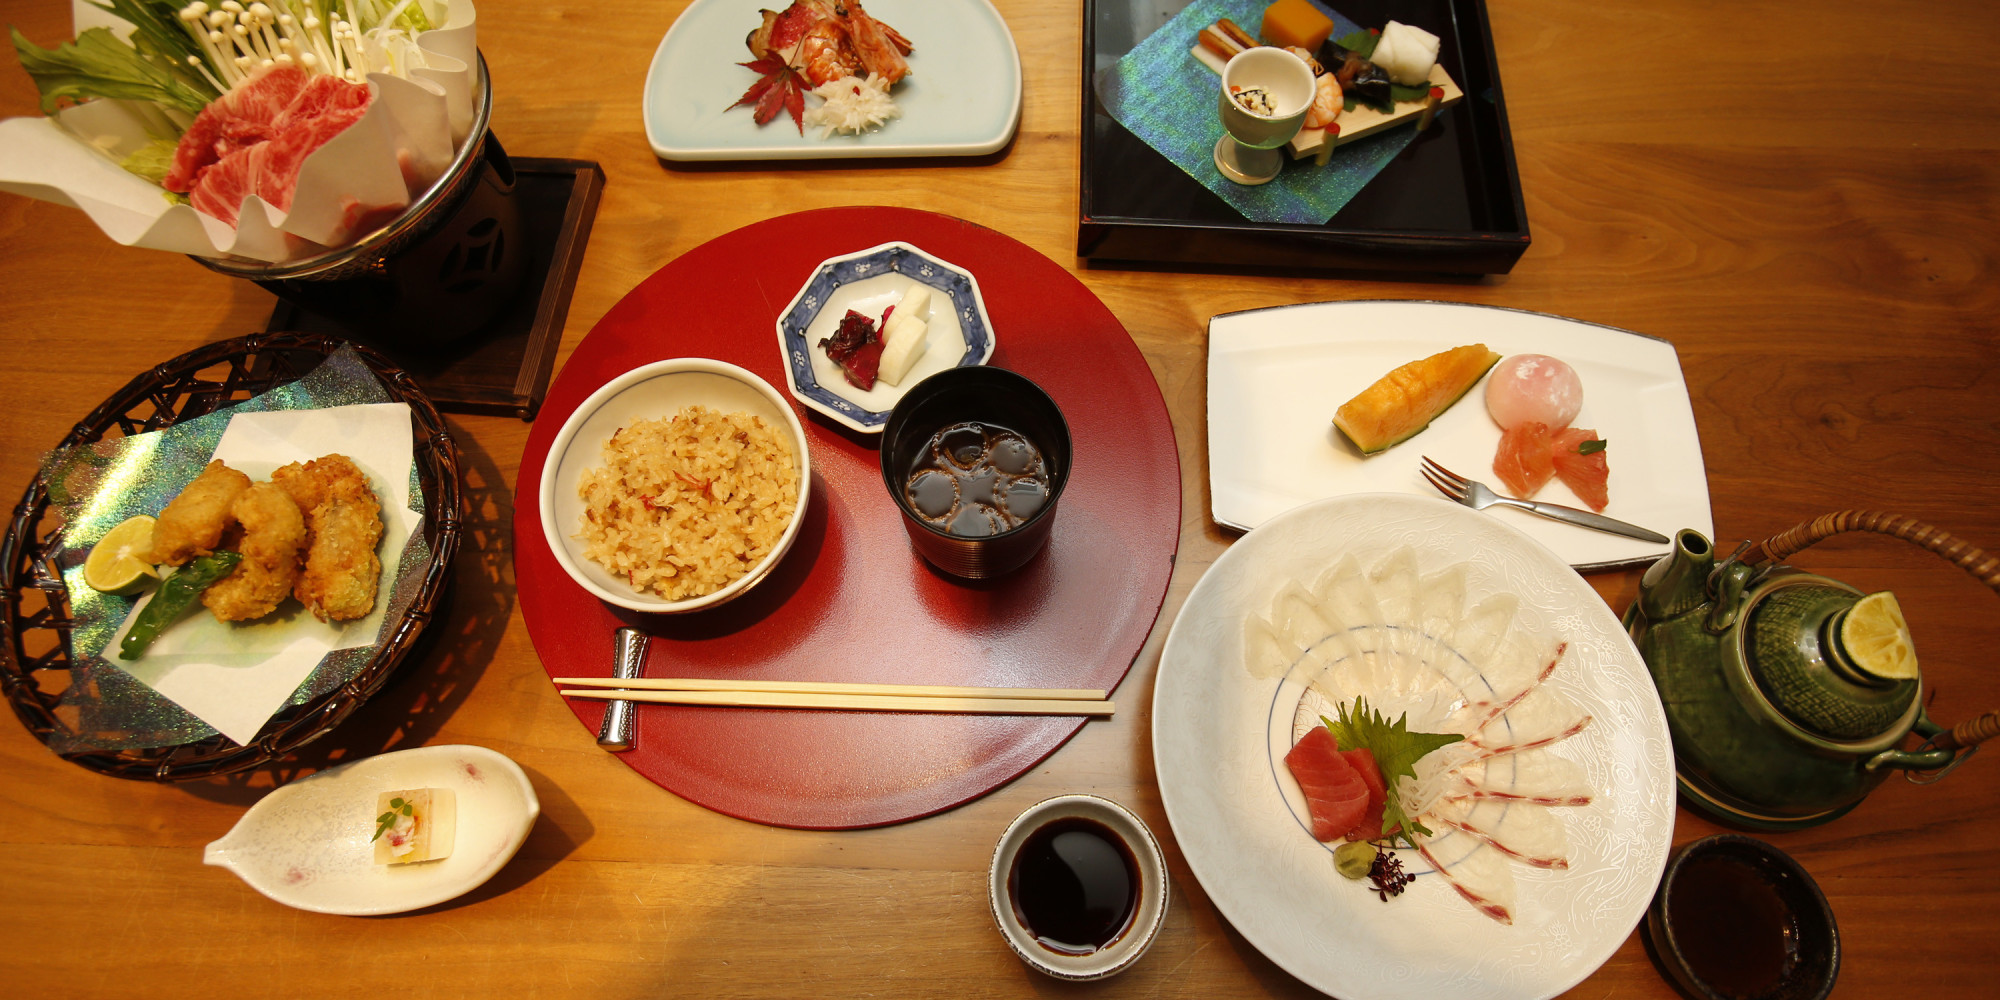 washoku : la cuisine japonaise traditionnelle en 30 recettes